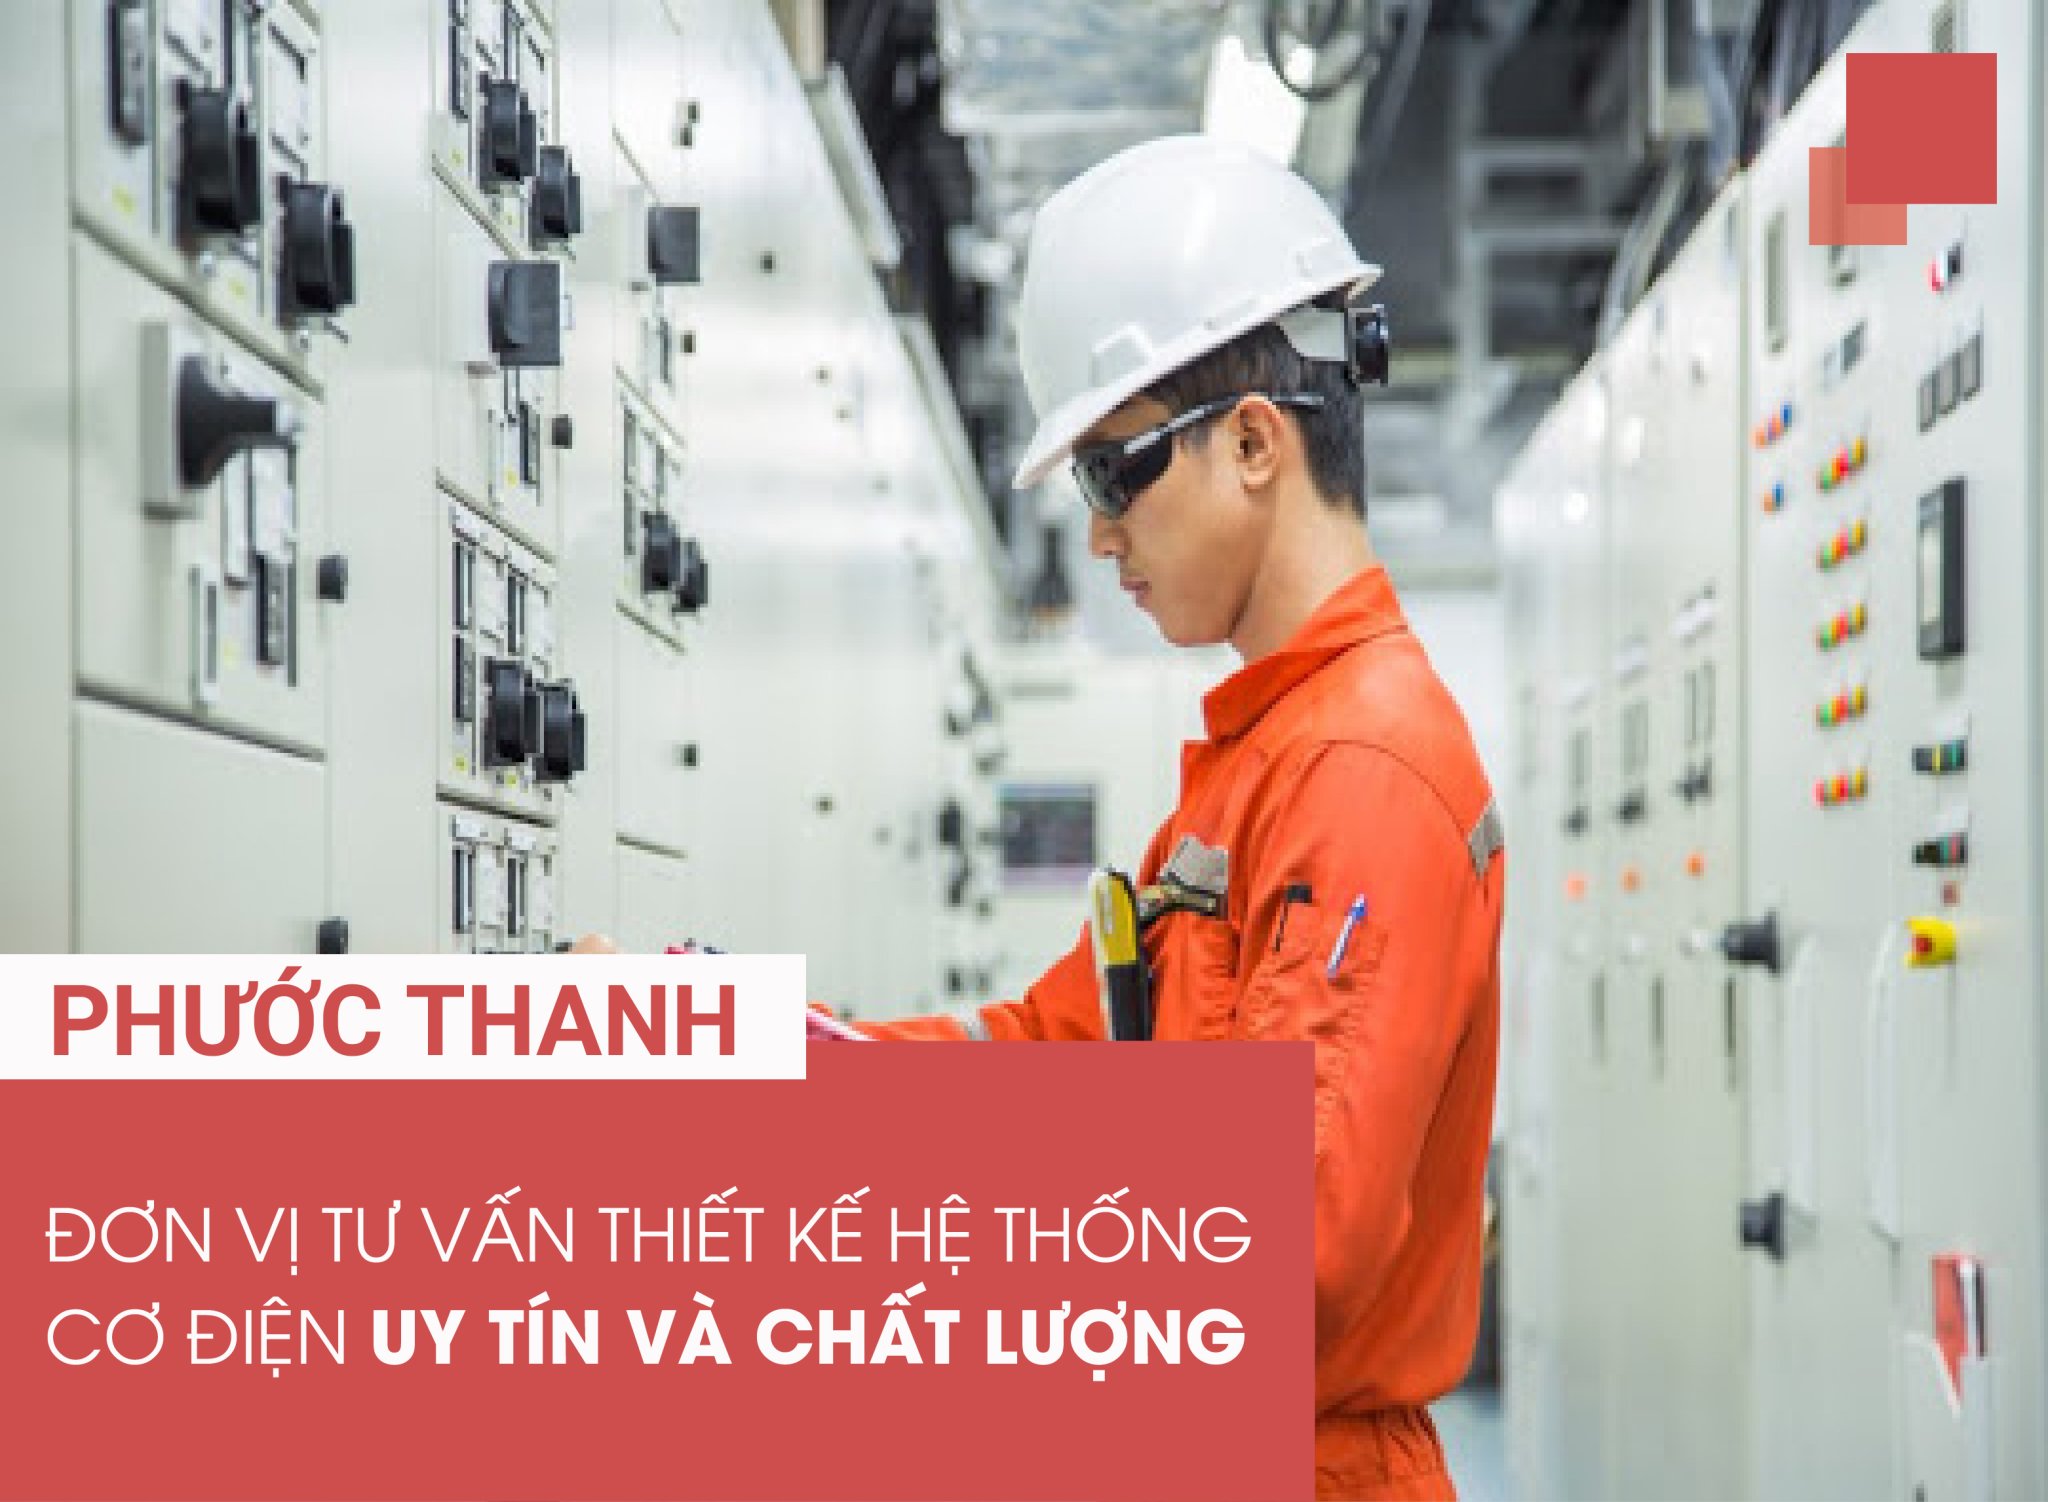 Don vi tu van, thiet ke, thi cong he thong co dien Phuoc Thanh